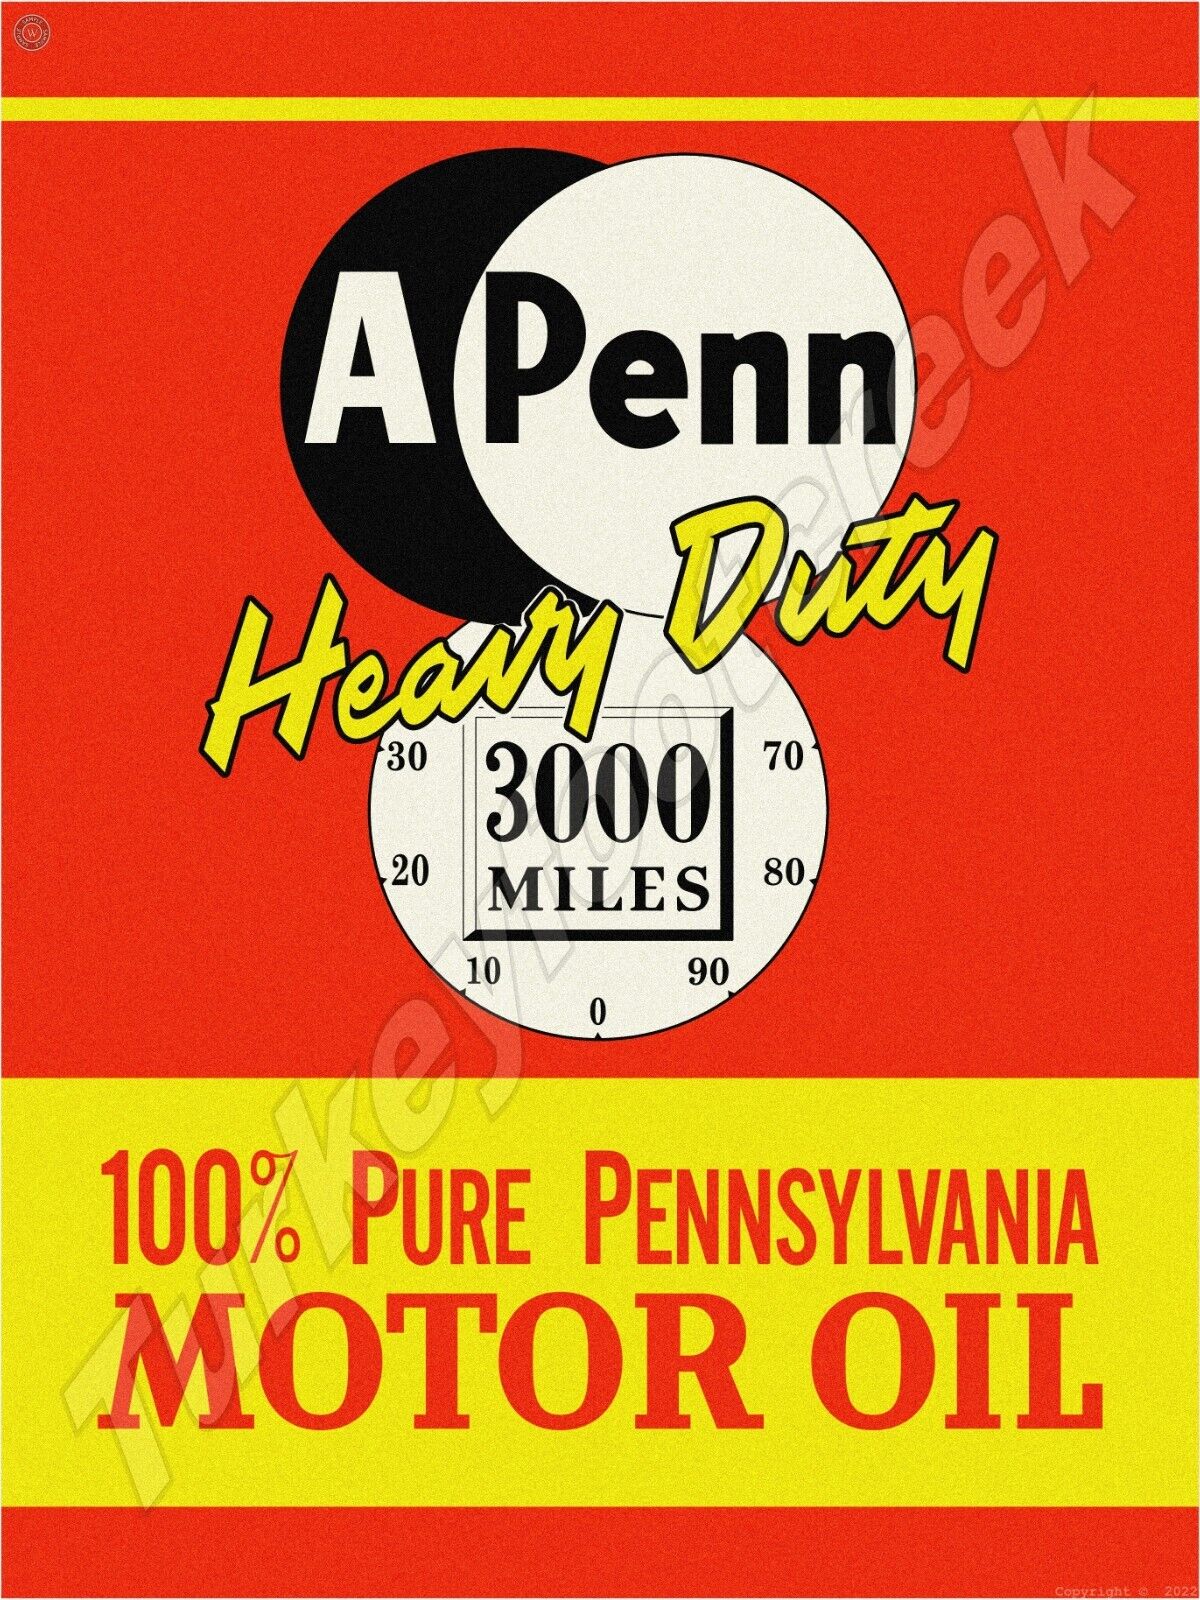 A Penn Heavy Duty Motor Oil 18\